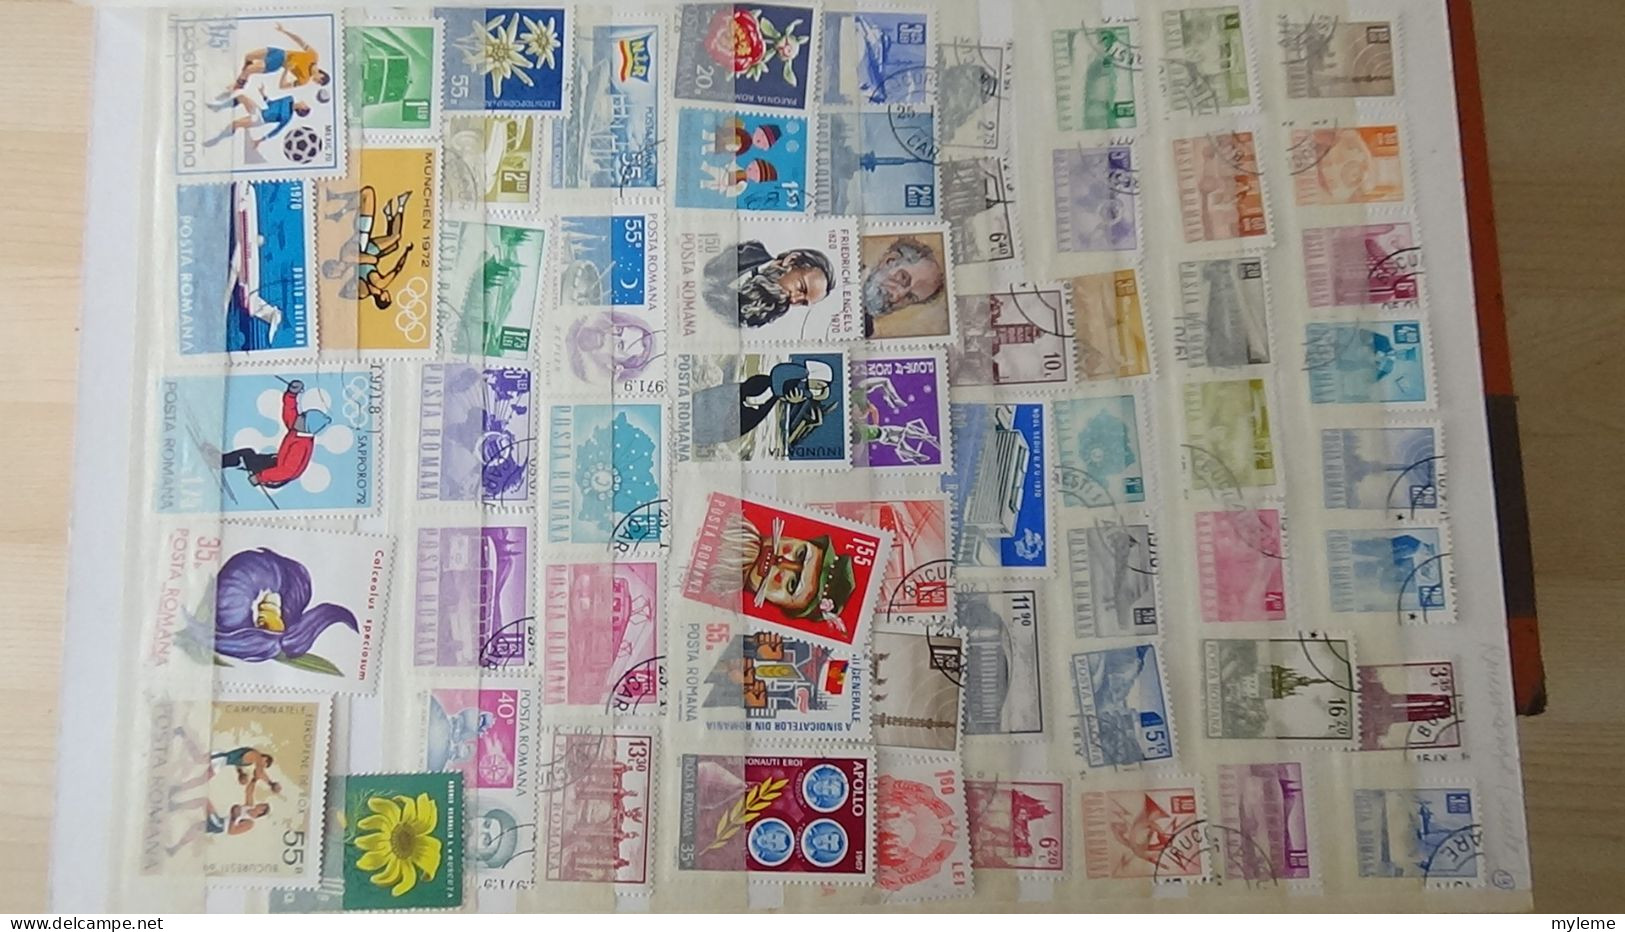 BF45 Bel ensemble de timbres de divers pays dont PA 14 ** (1 adhérence) voir scan. Cote 2000 euros